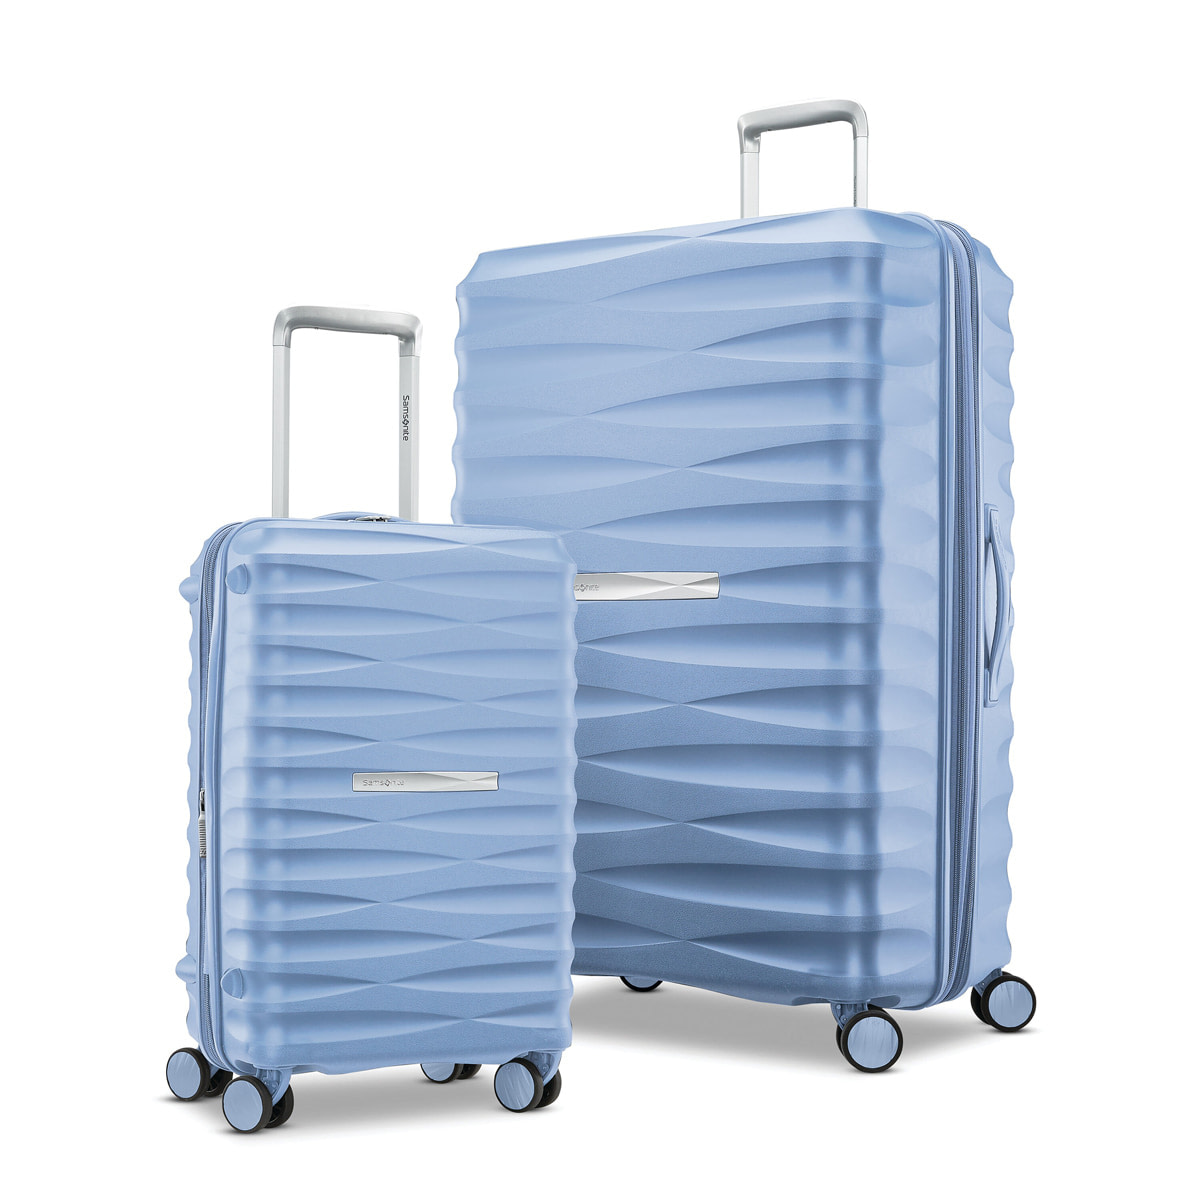 Best 2-Piece Luggage Set